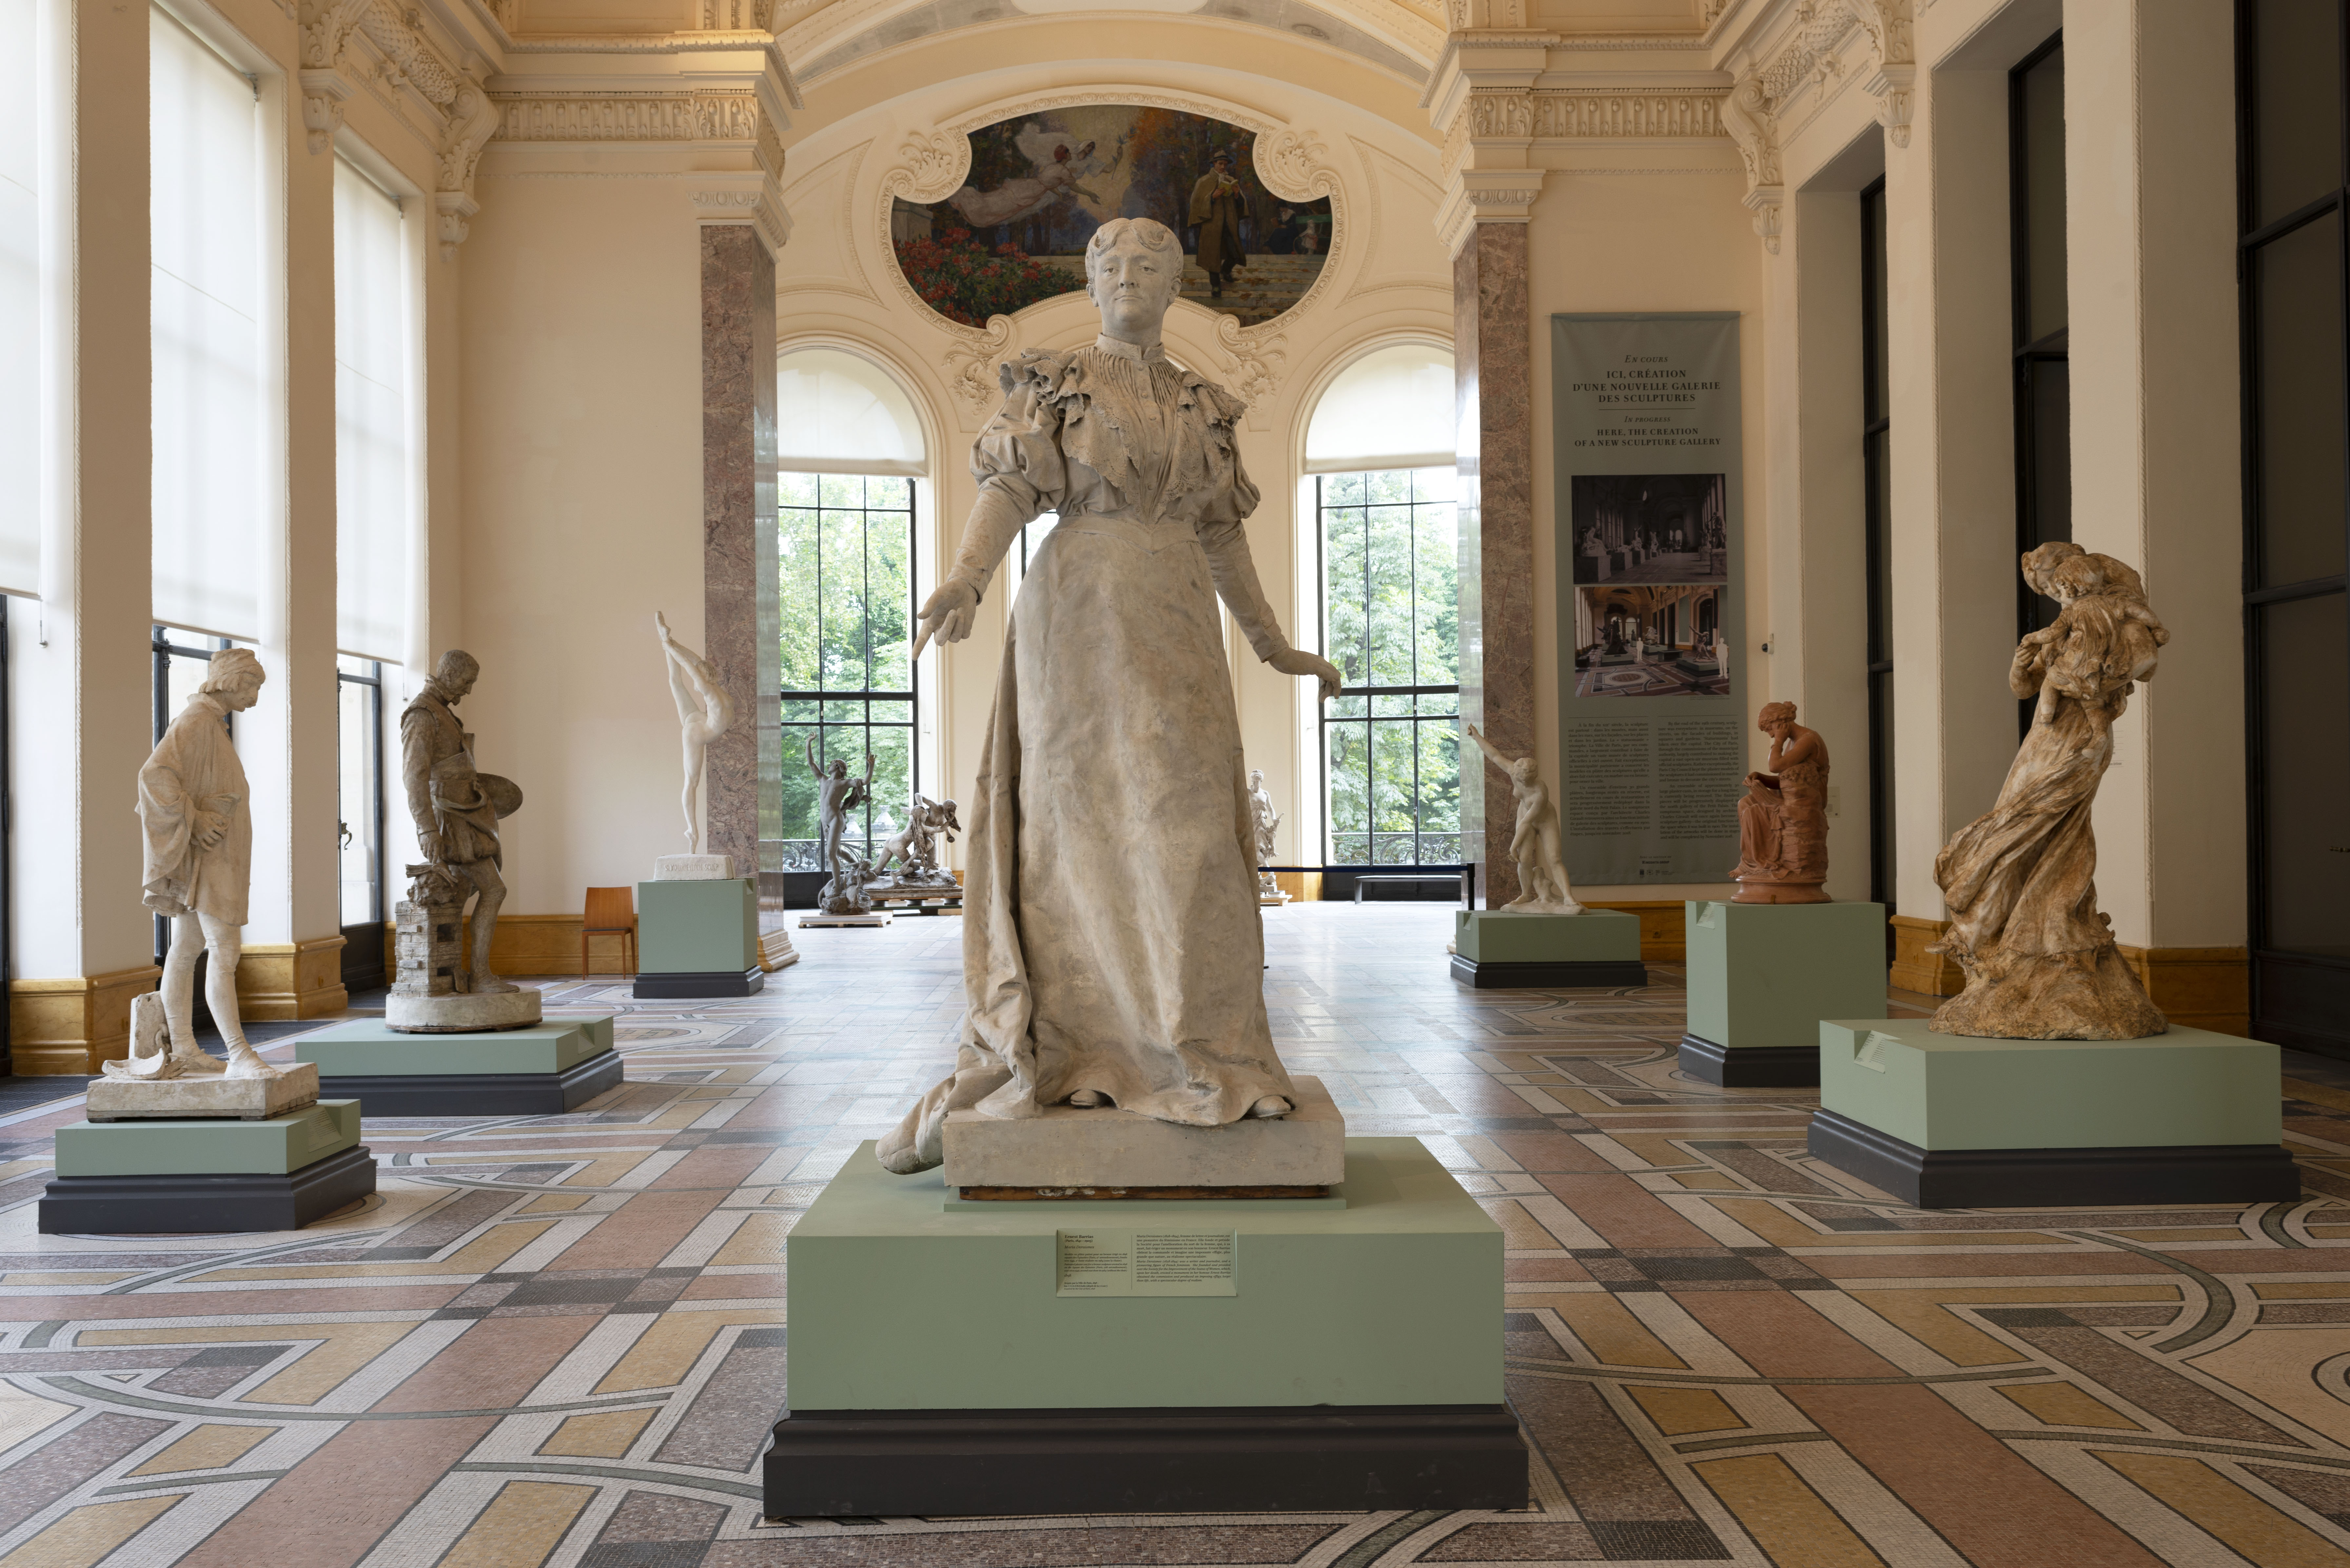 Vue de la galerie de sculptures : au centre, "Maria Deraismes" de Barrias